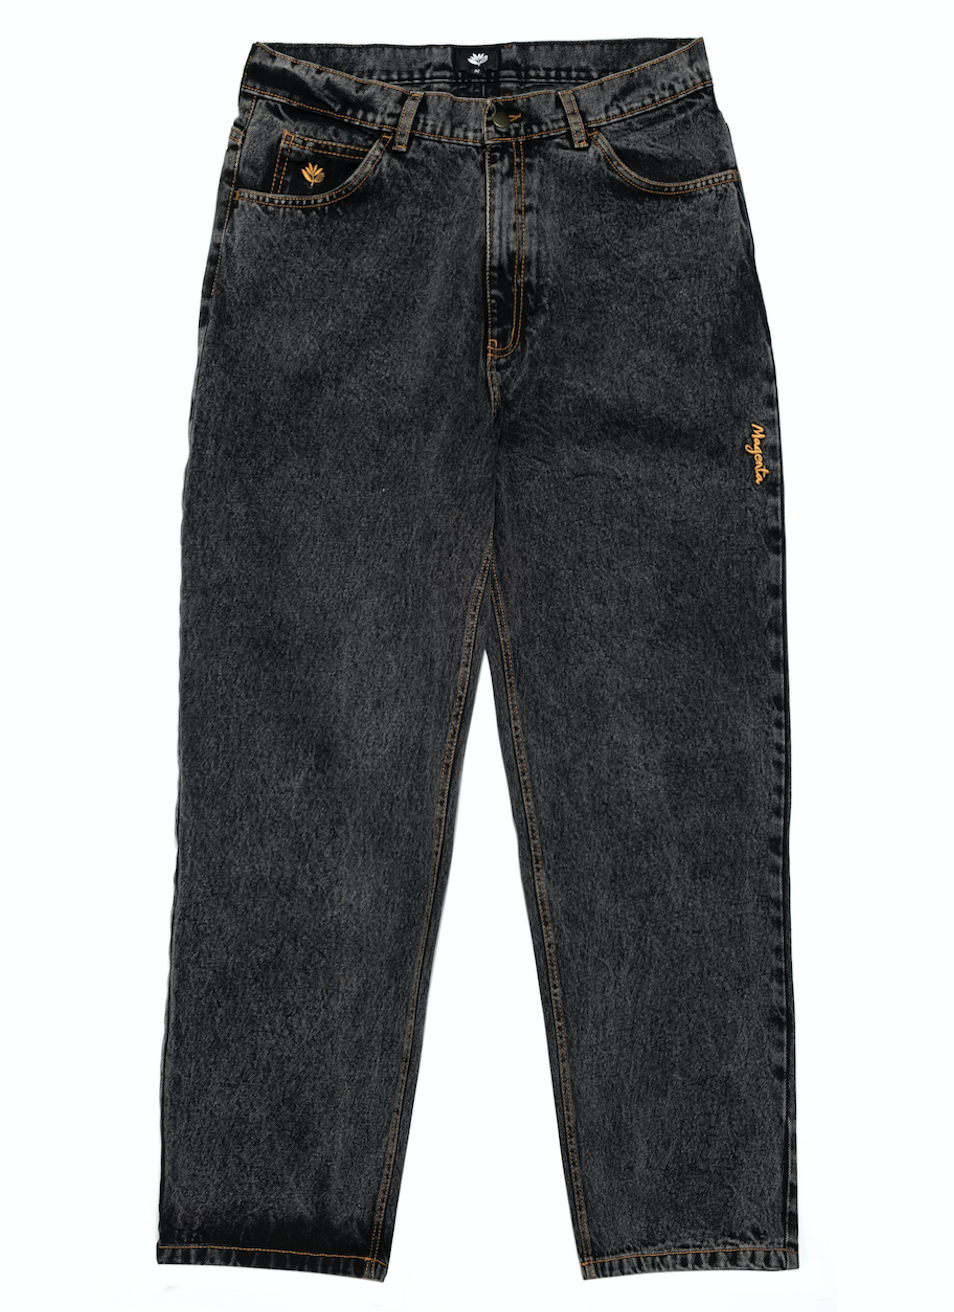 Magenta OG Pants Jeans 2 Tone Distressed Black